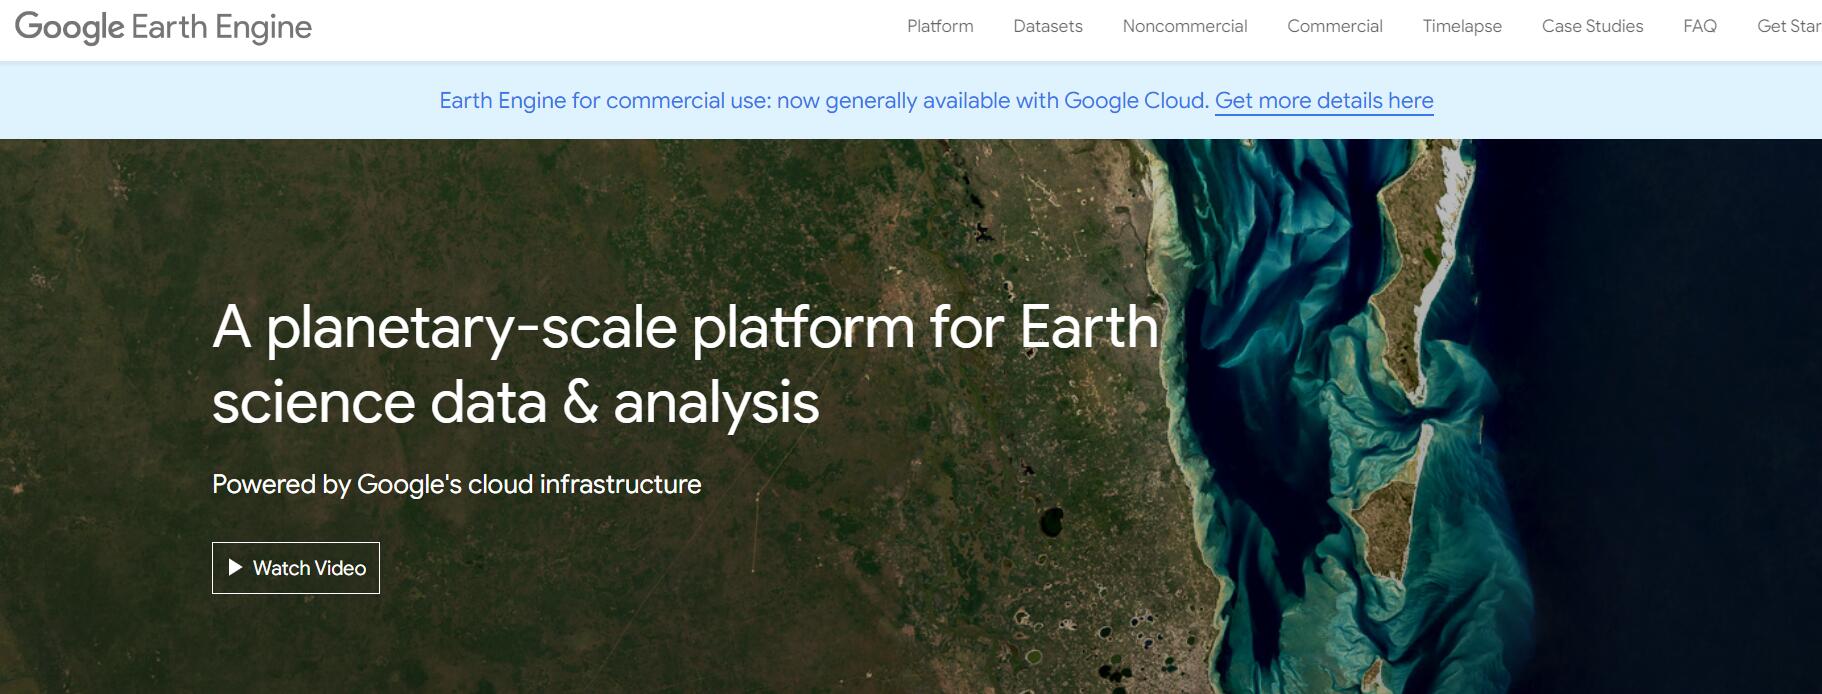 Google Earth Engine(GEE)专用教育邮箱